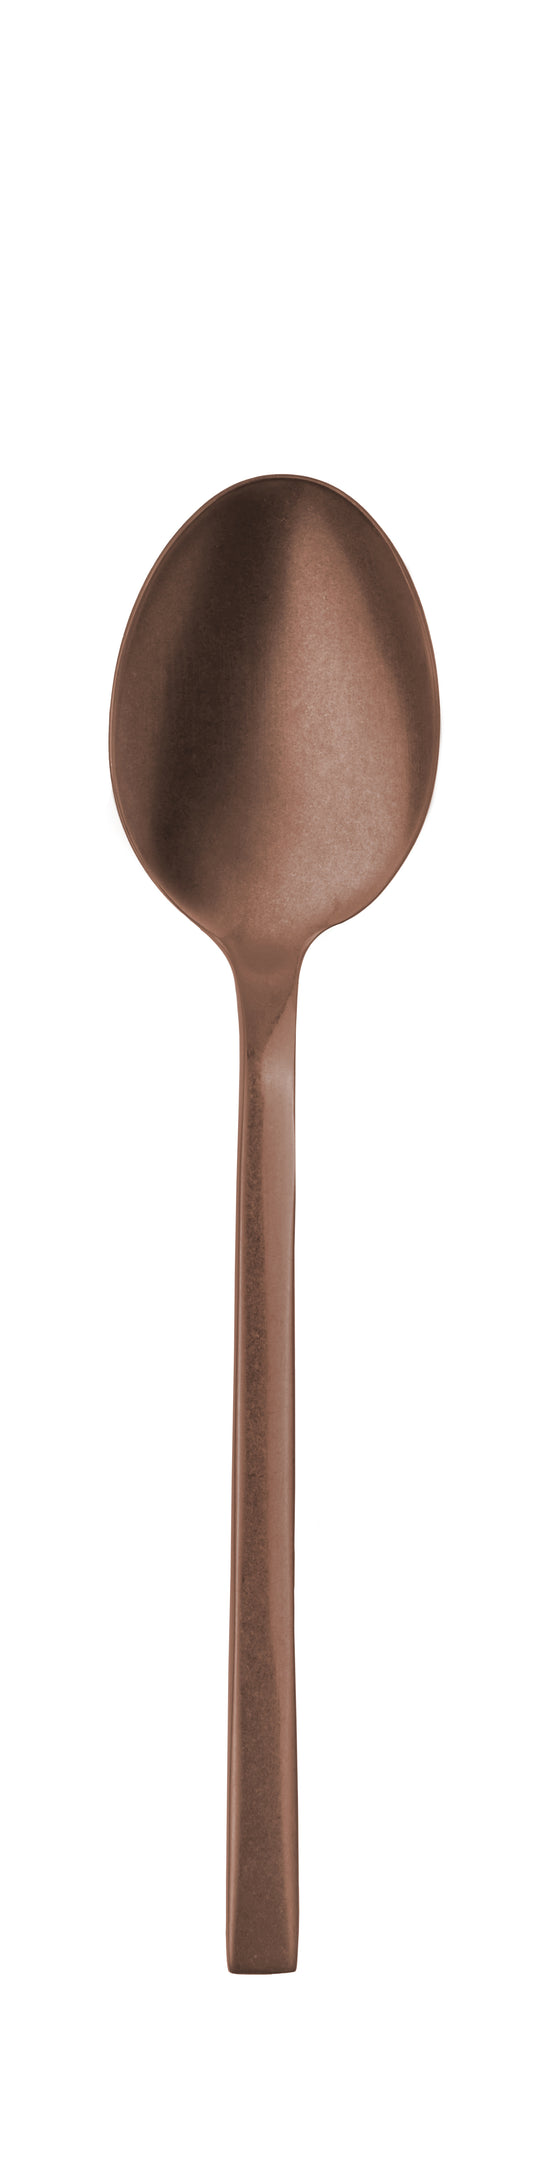 Table spoon PROFILE PVD copper stone 206mm